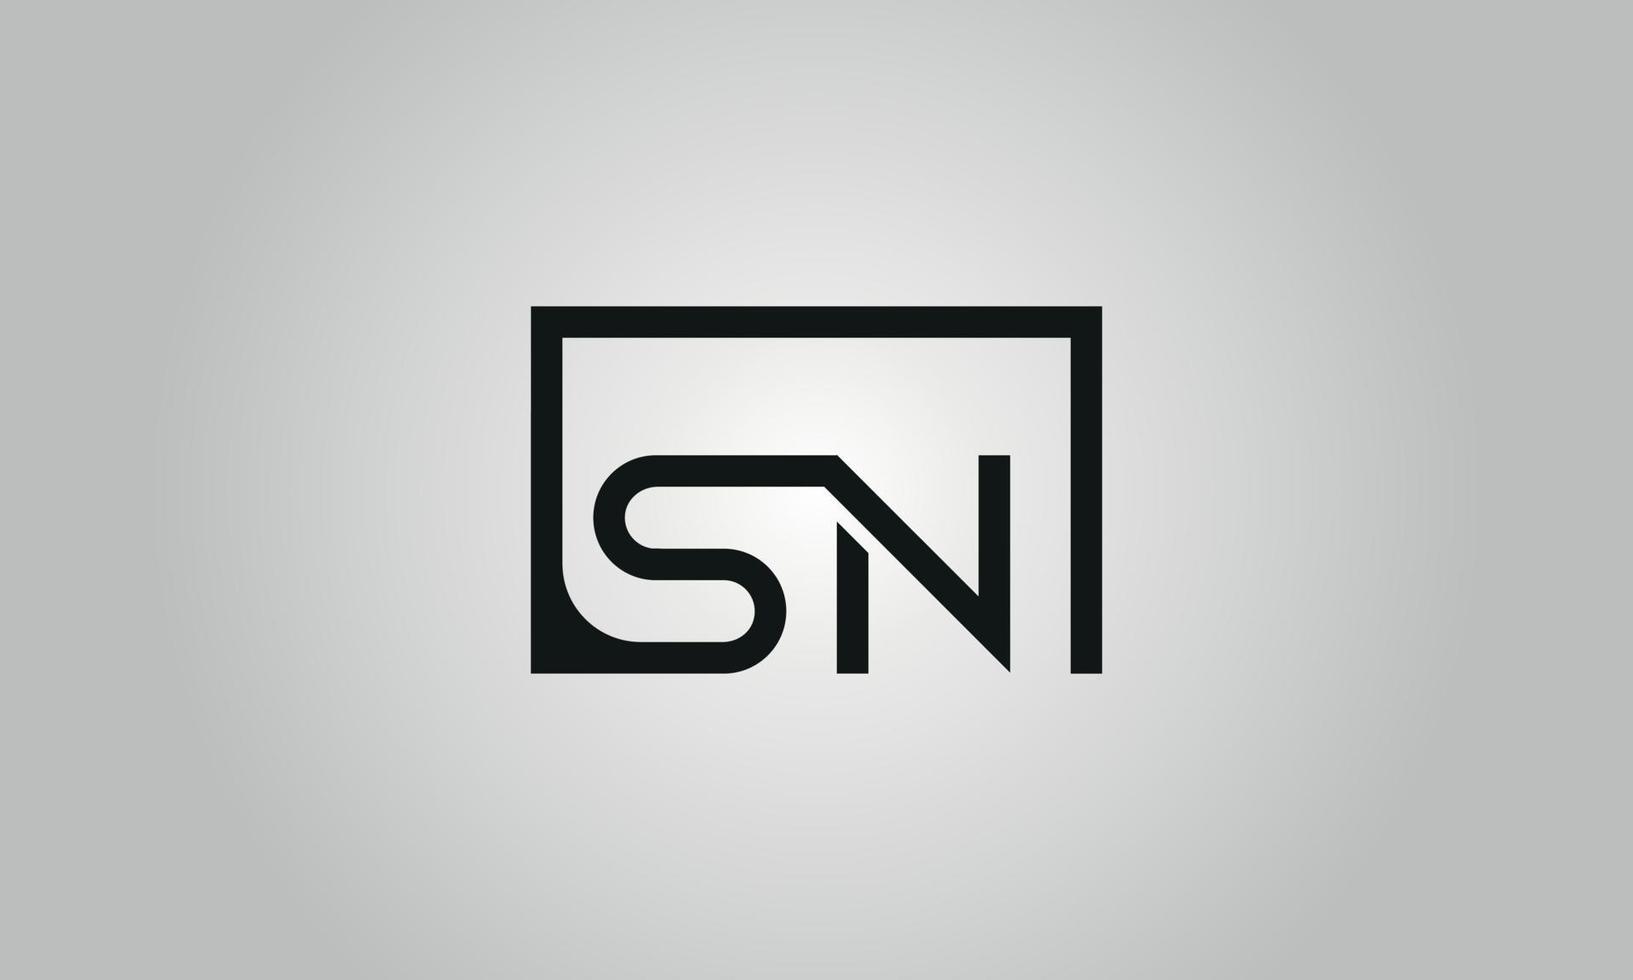 création de logo lettre sn. logo sn avec forme carrée dans le modèle de vecteur gratuit de vecteur de couleurs noires.